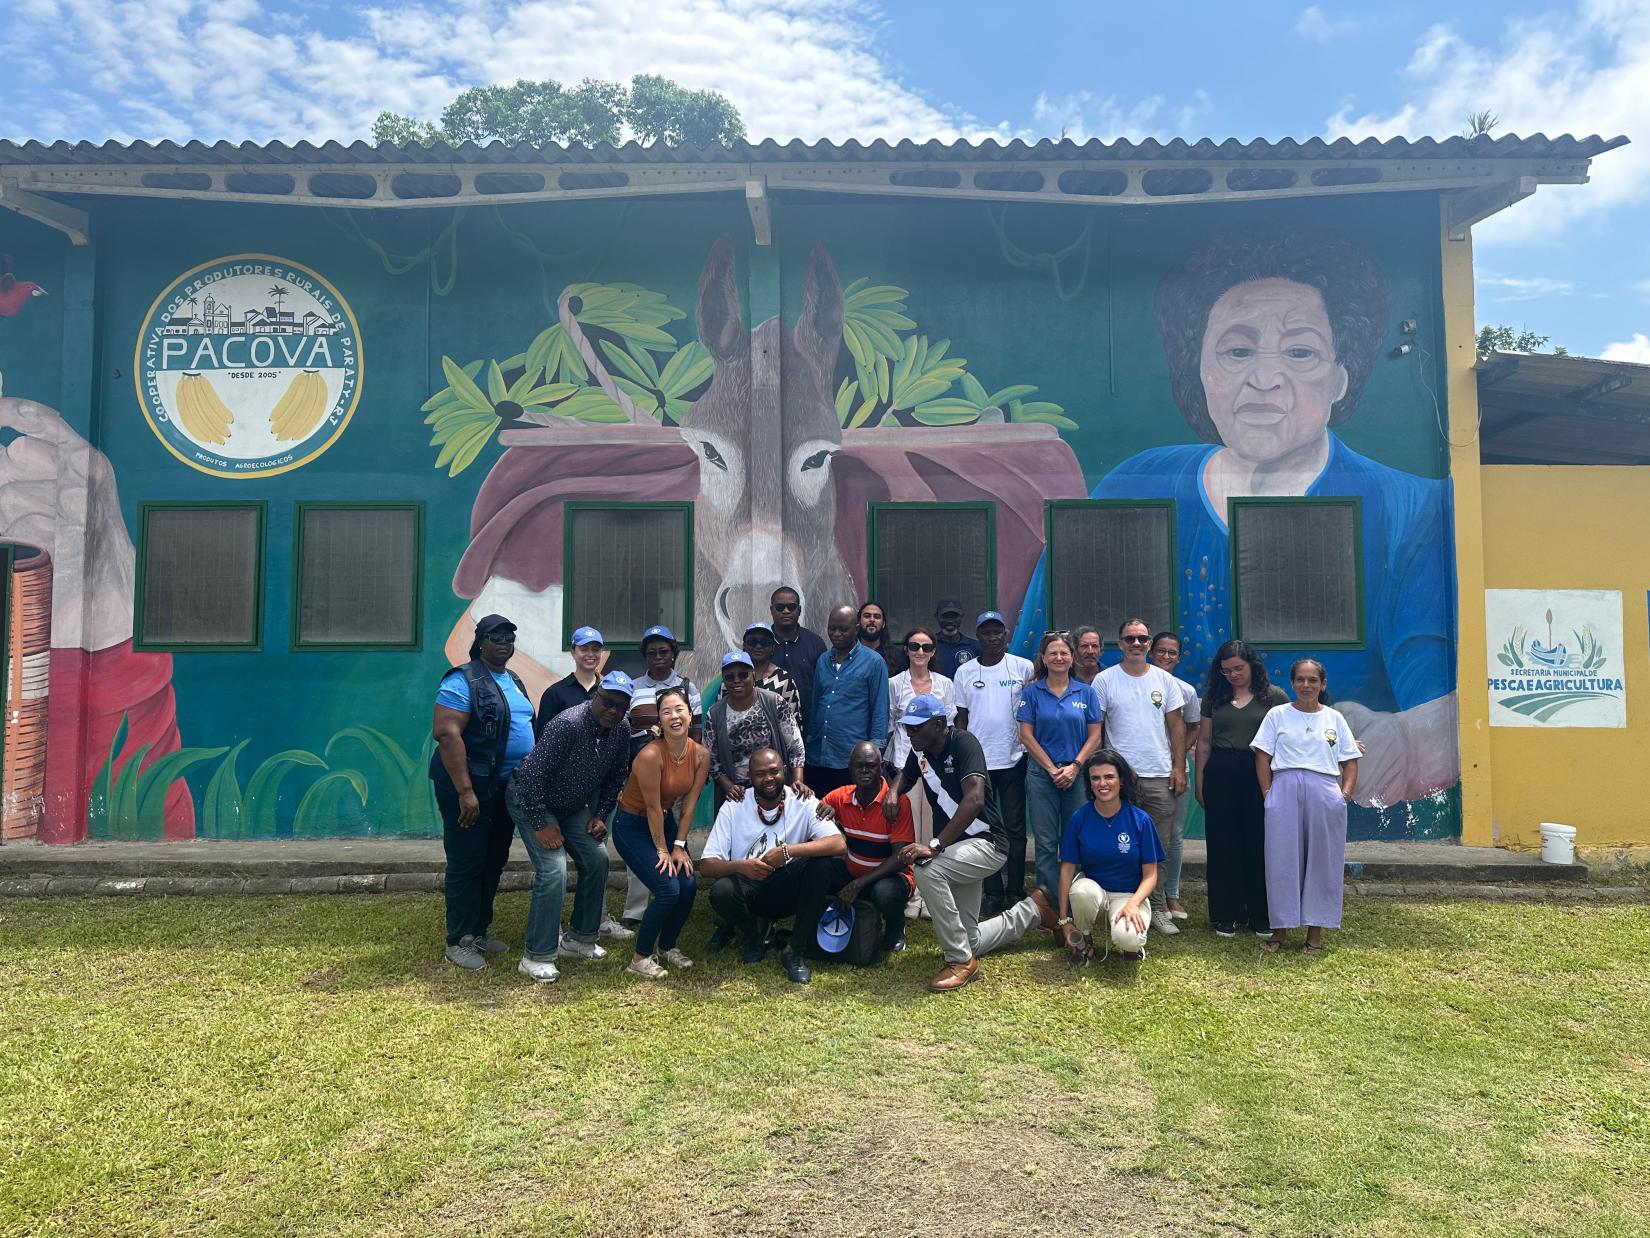 Membros da delegação da República do Congo conhecem a Cooperativa Pacová em Paraty (RJ).